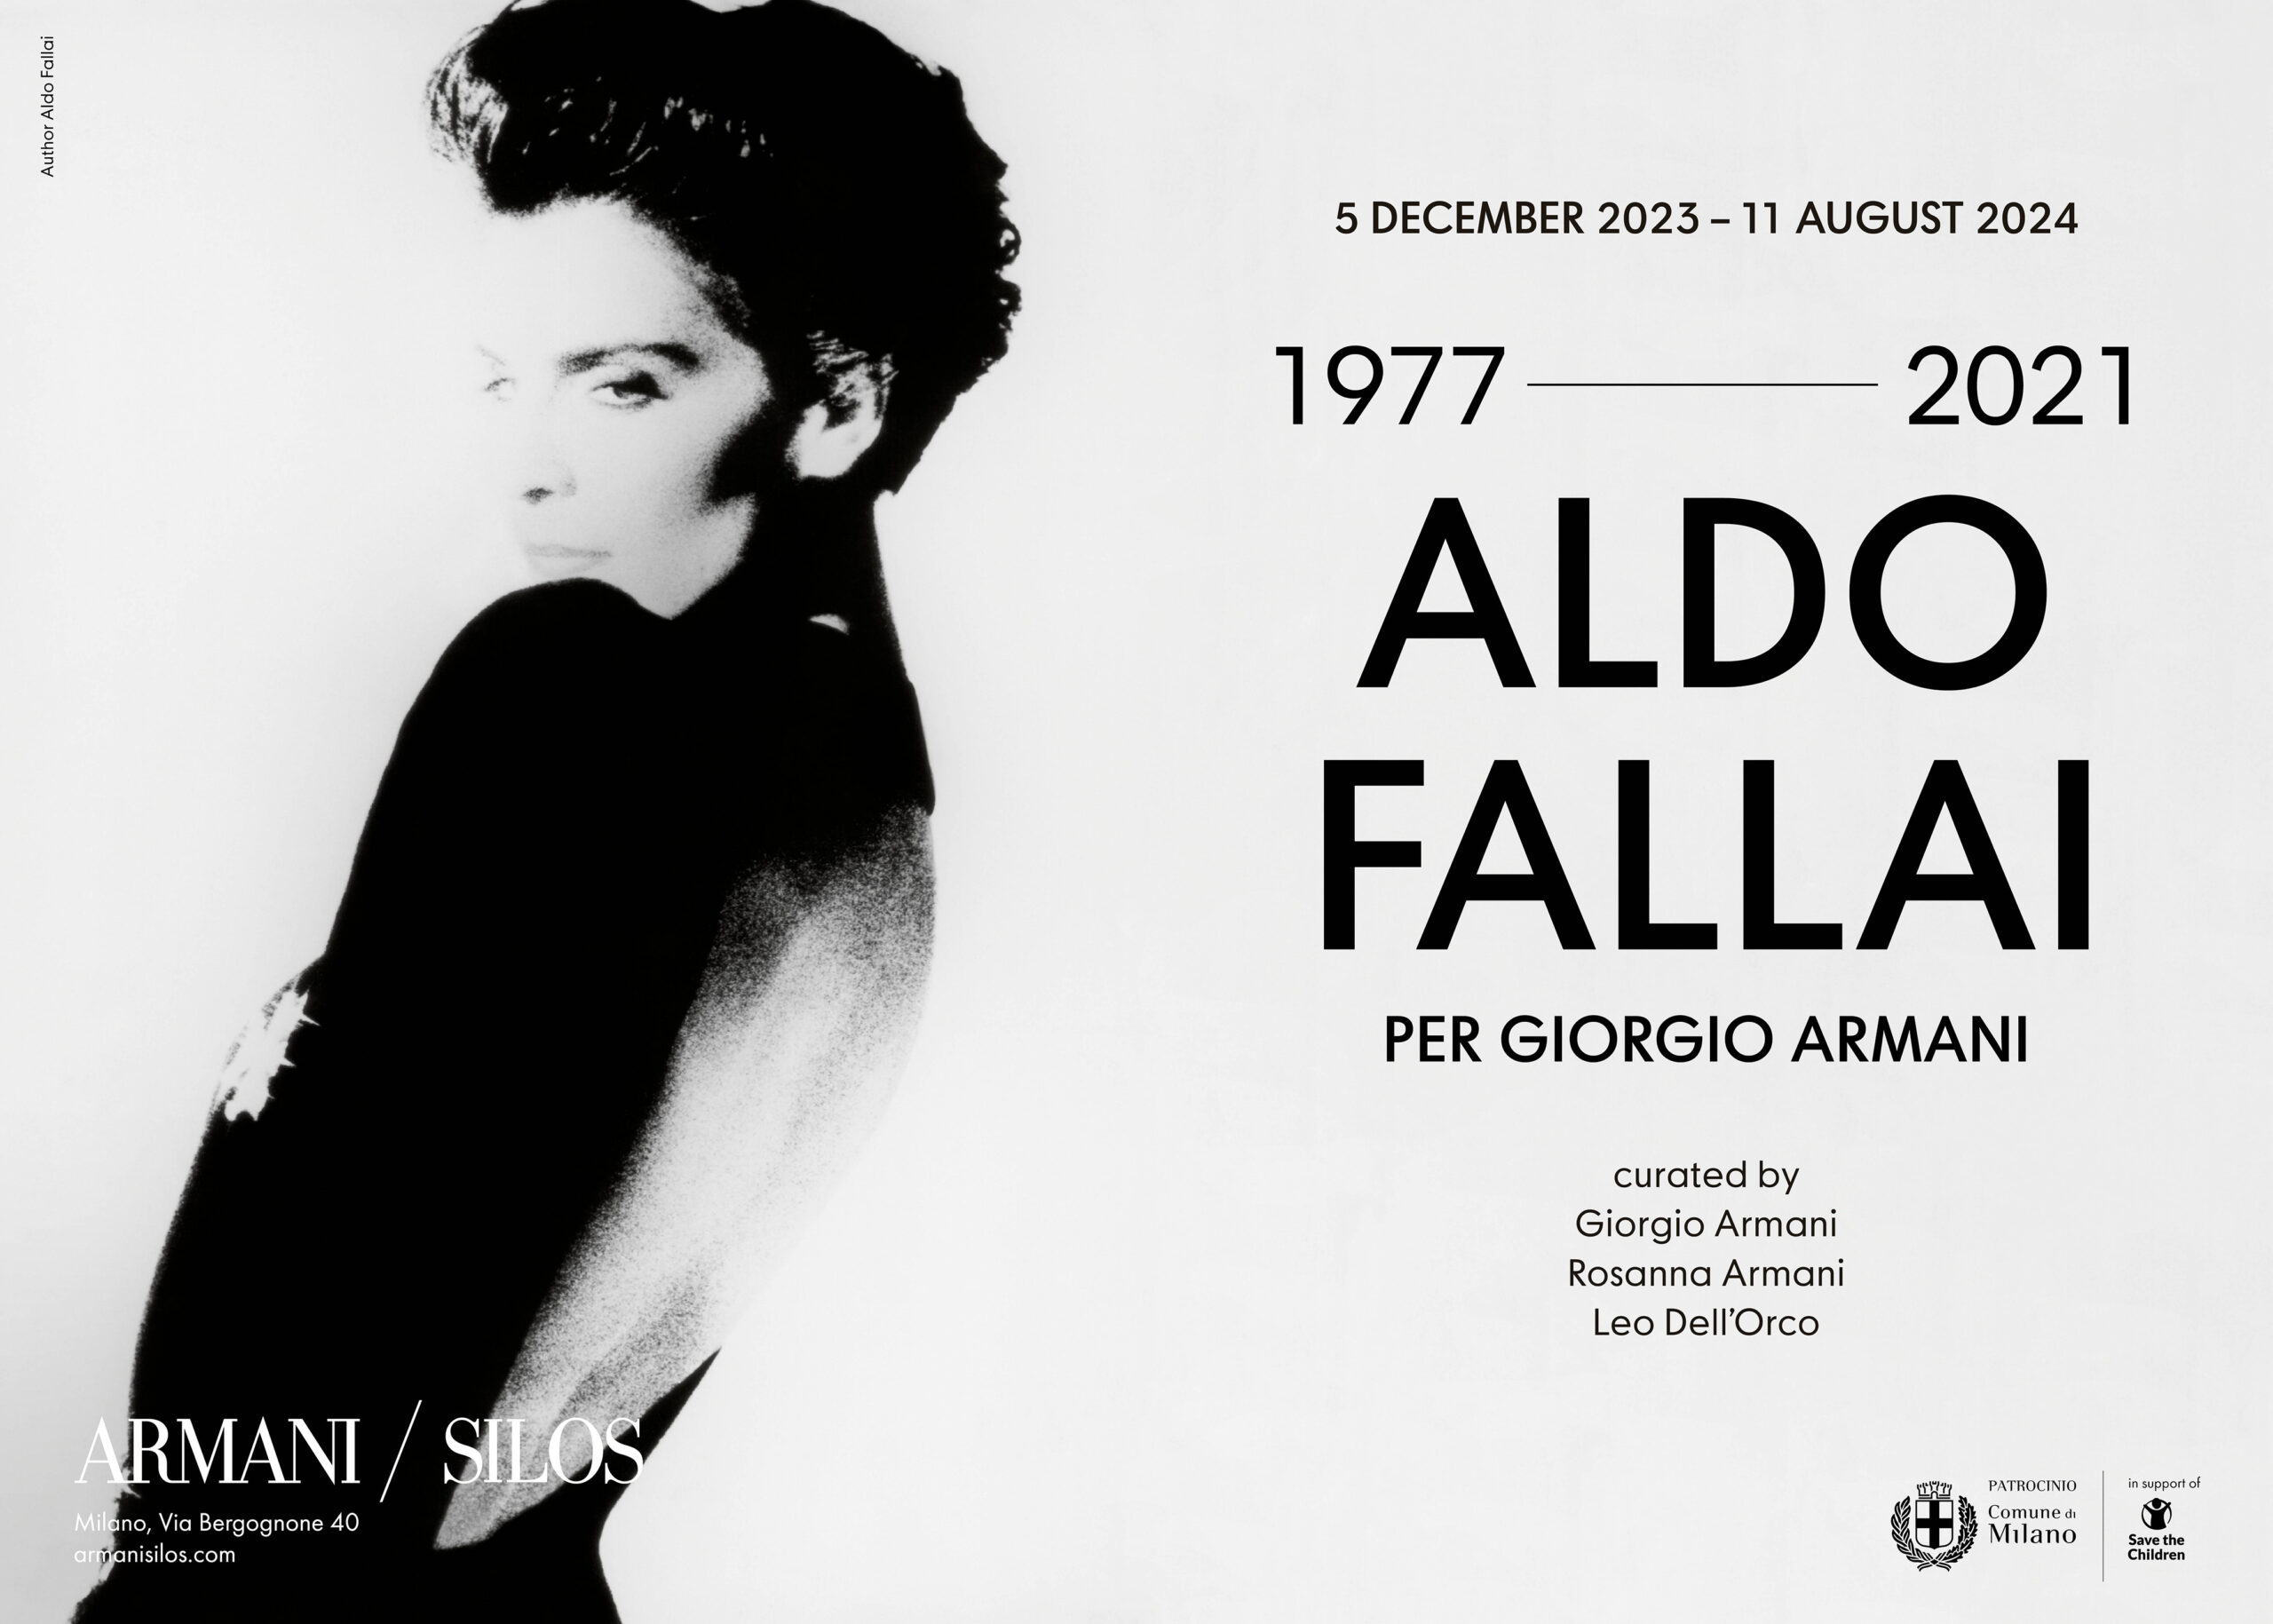 Giorgio Armani Unveils “Aldo Fallai per Giorgio Armani, 1977-2021” Exhibition at Armani/Silos